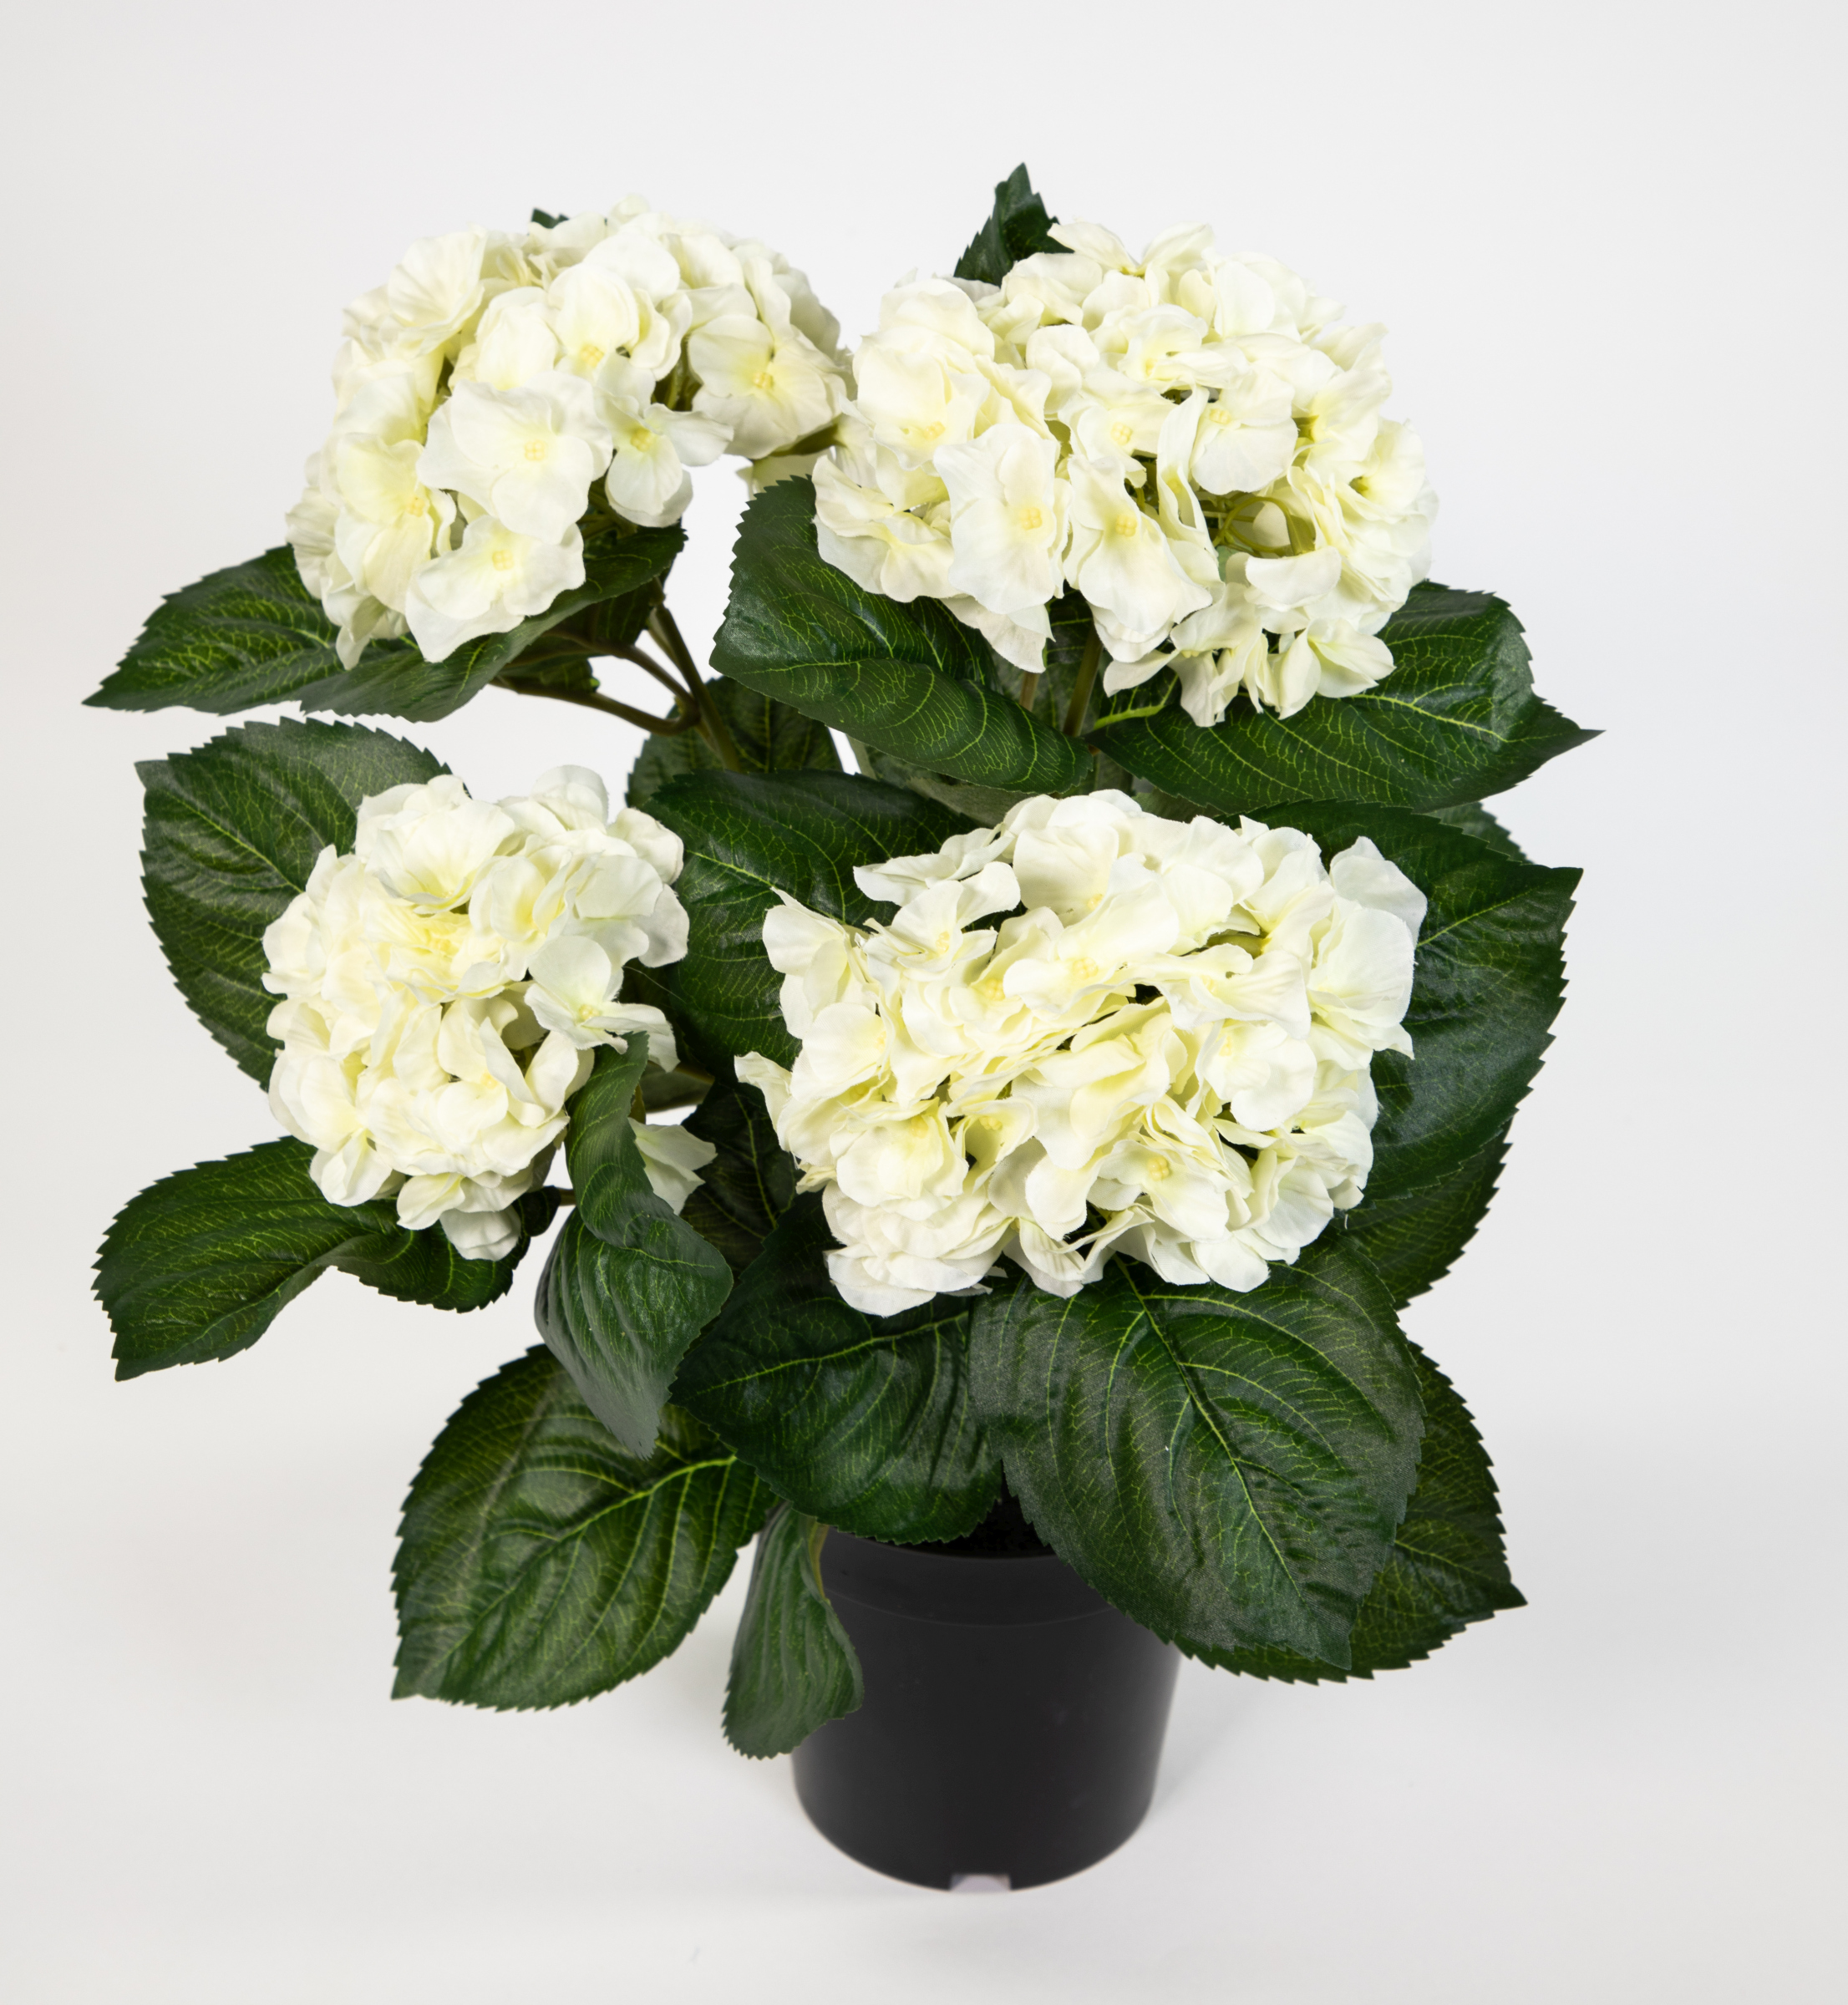 Hortensienbusch Deluxe 42cm weiß-creme künstliche Pflanzen im Topf Blumen LM Kunstpflanzen Hortensie